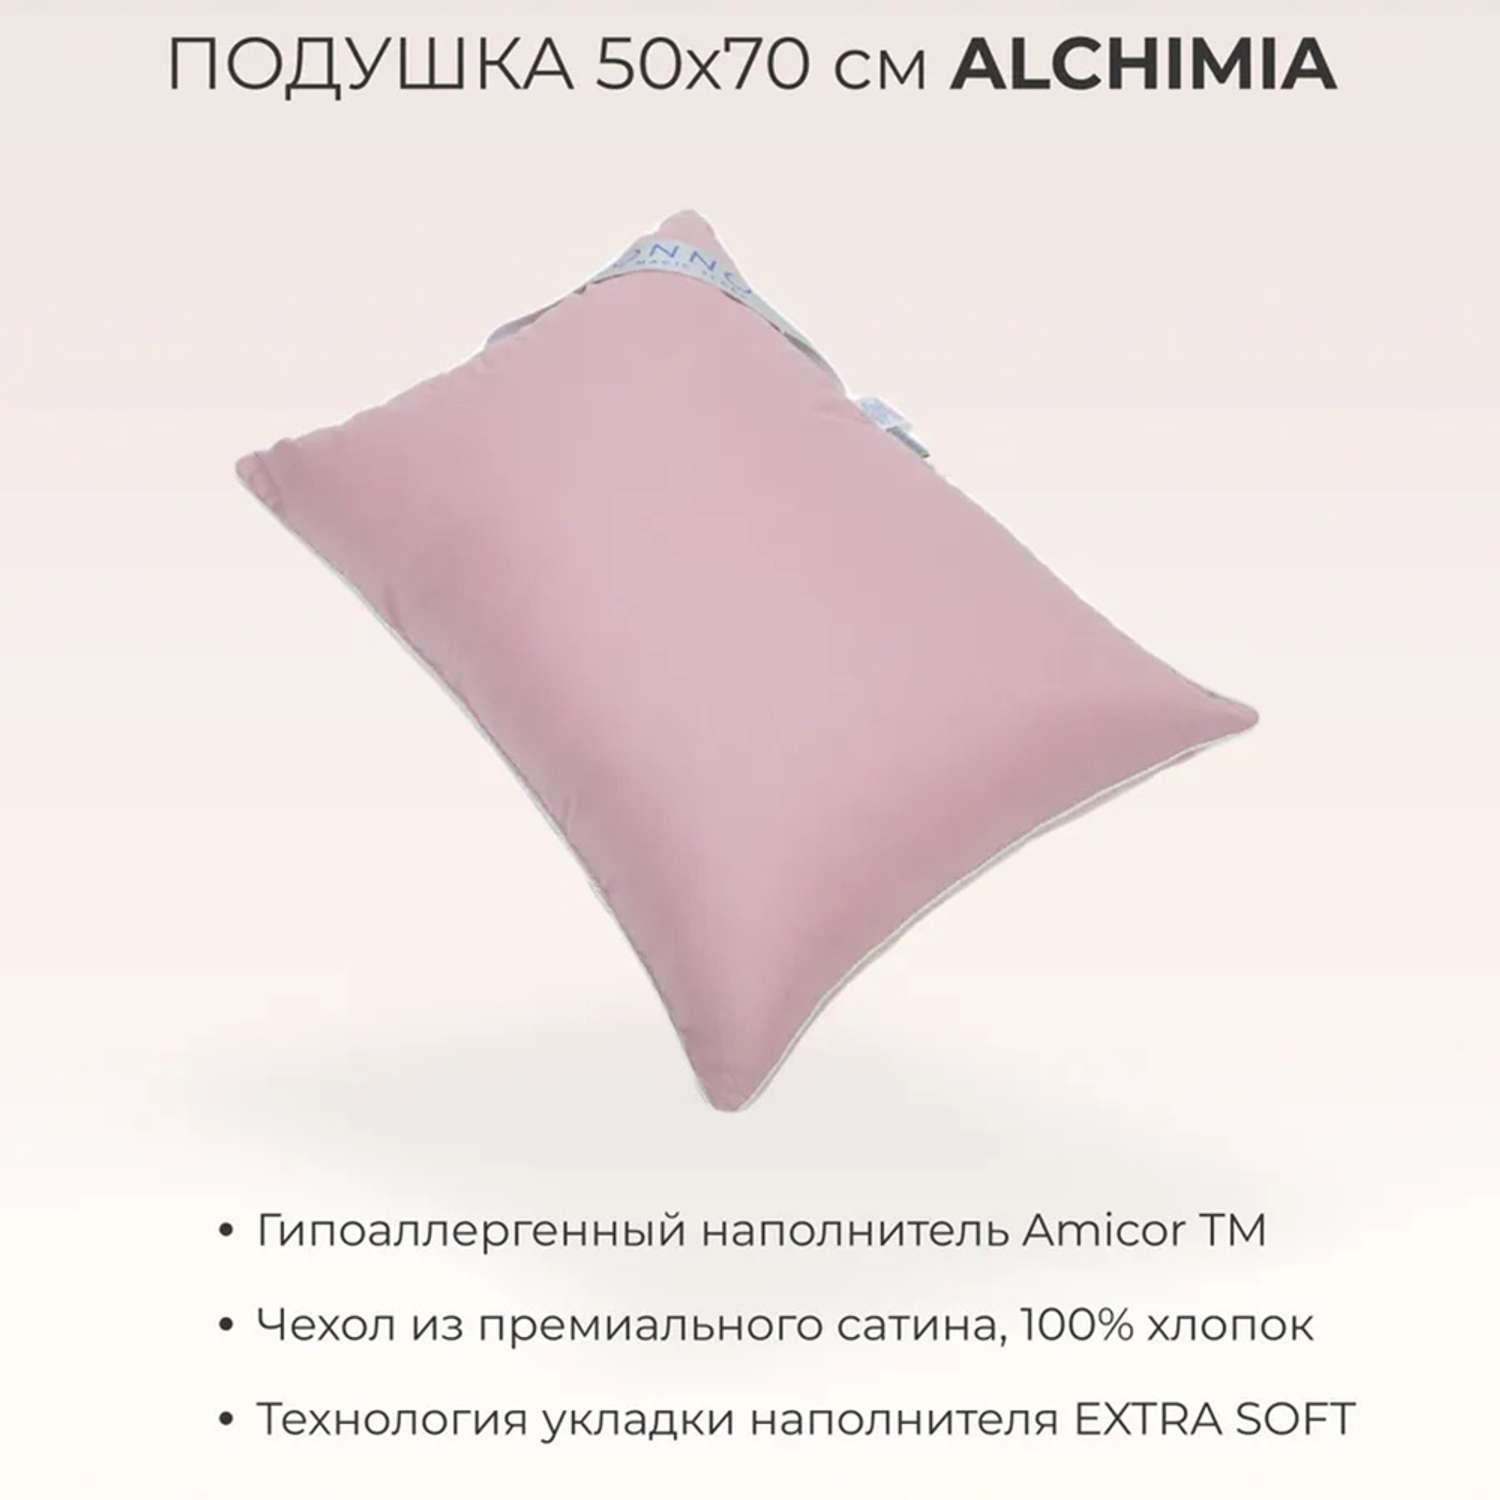 Подушка SONNO ALCHIMIA 50х70 см гипоаллергенный наполнитель Amicor TM Бриллиантовый розовый - фото 2